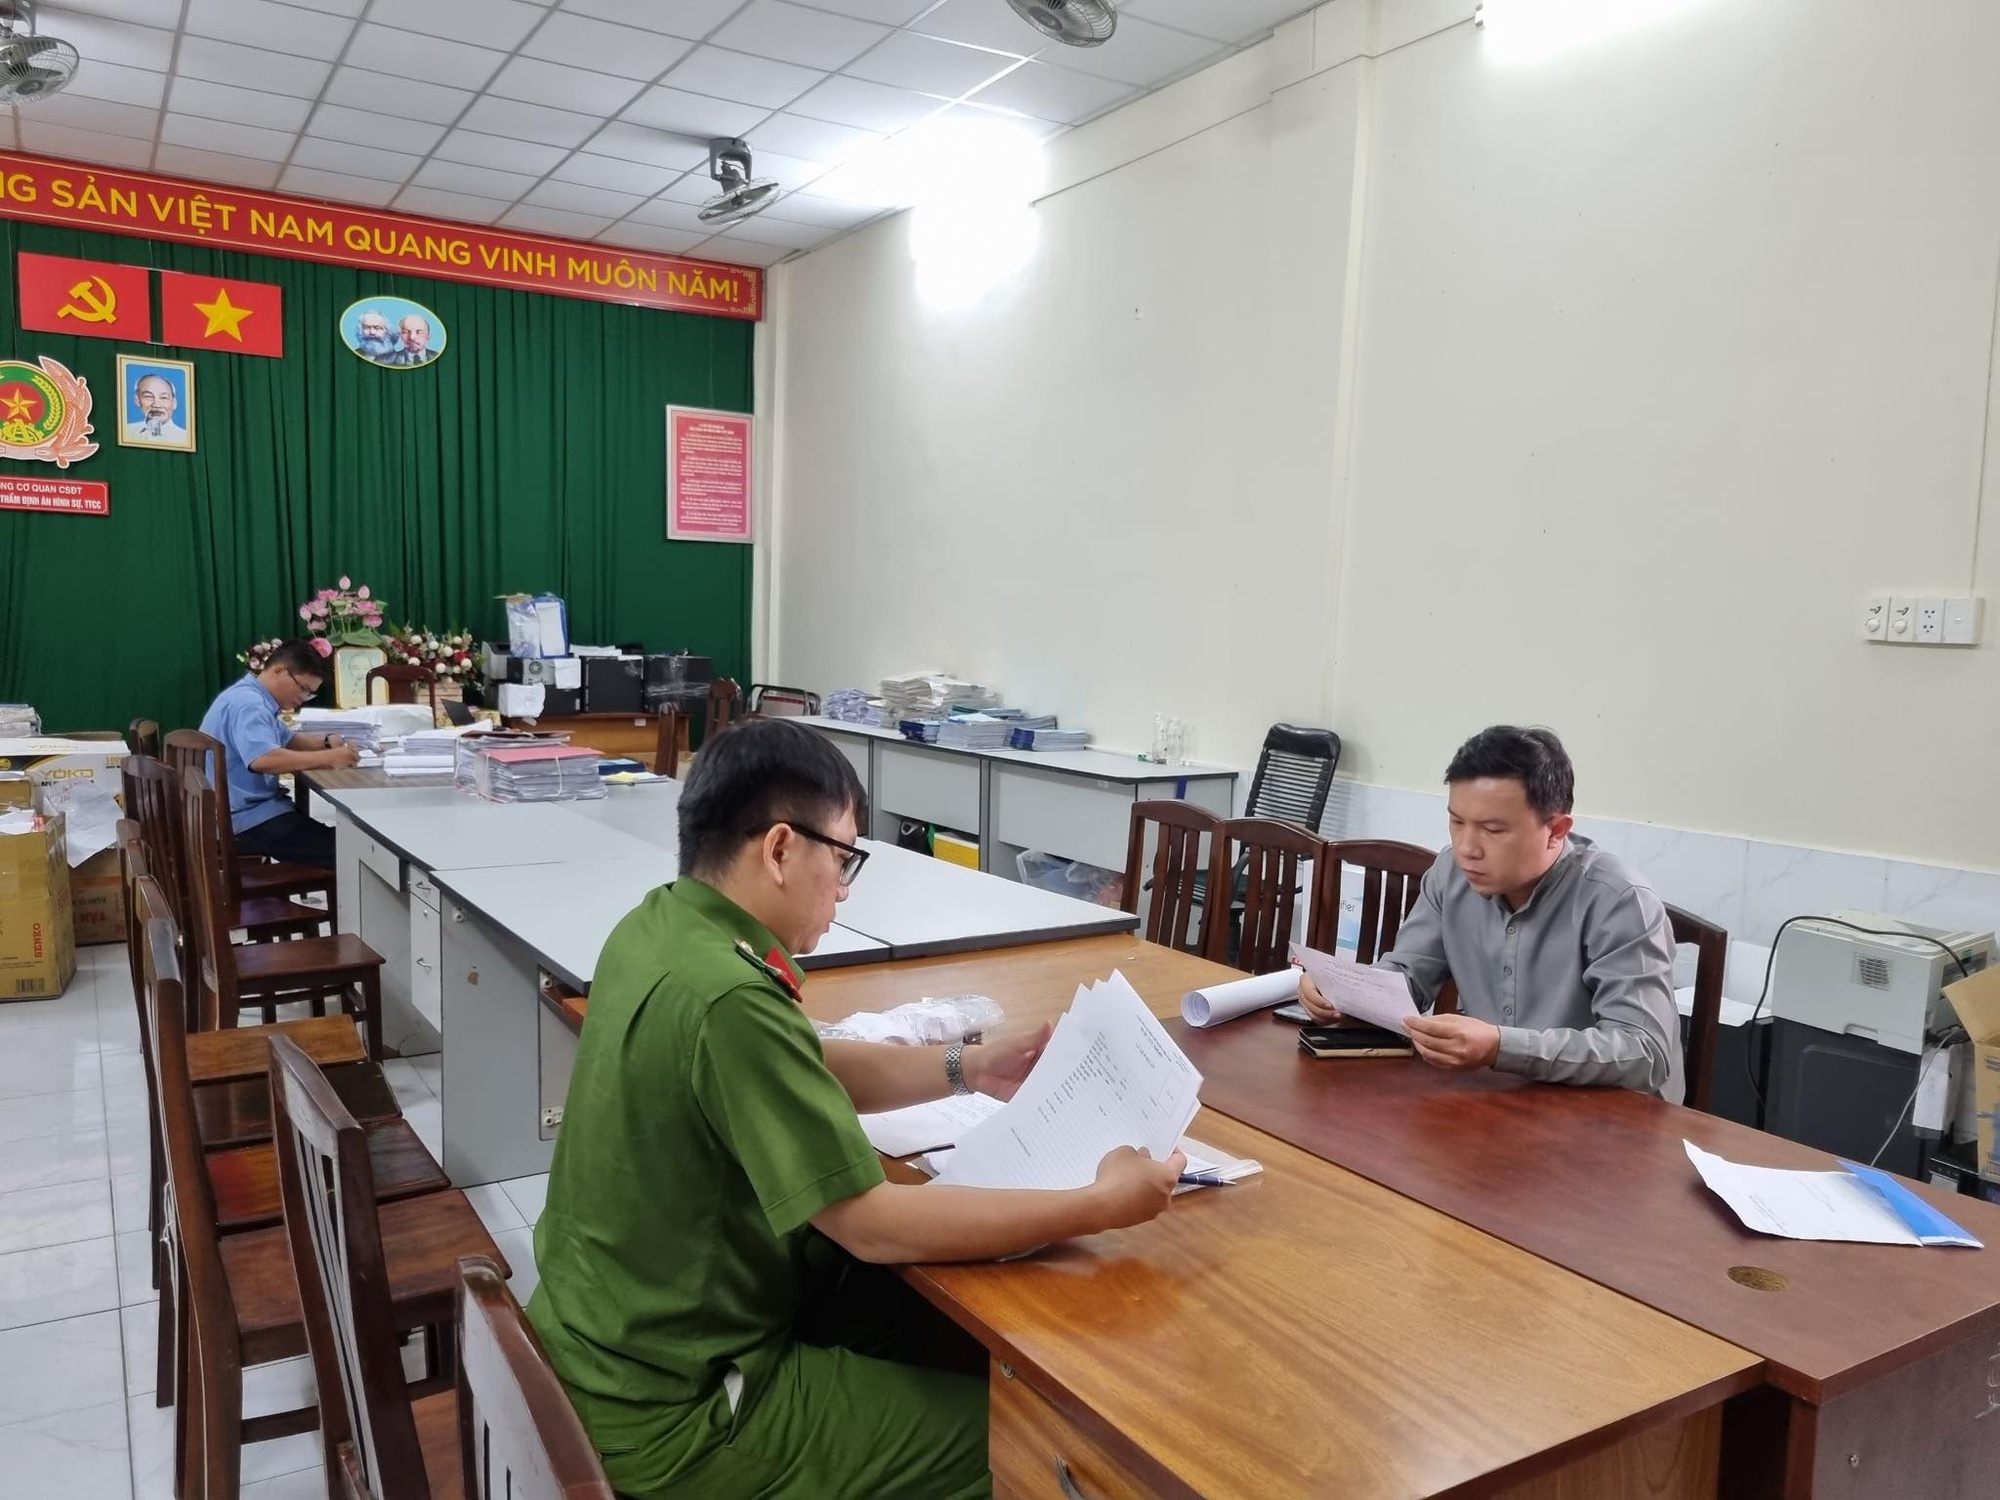 Toàn cảnh vụ án Nguyễn Phương Hằng trước ngày xét xử: Những nhân vật bị 'gọi tên' - Ảnh 3.